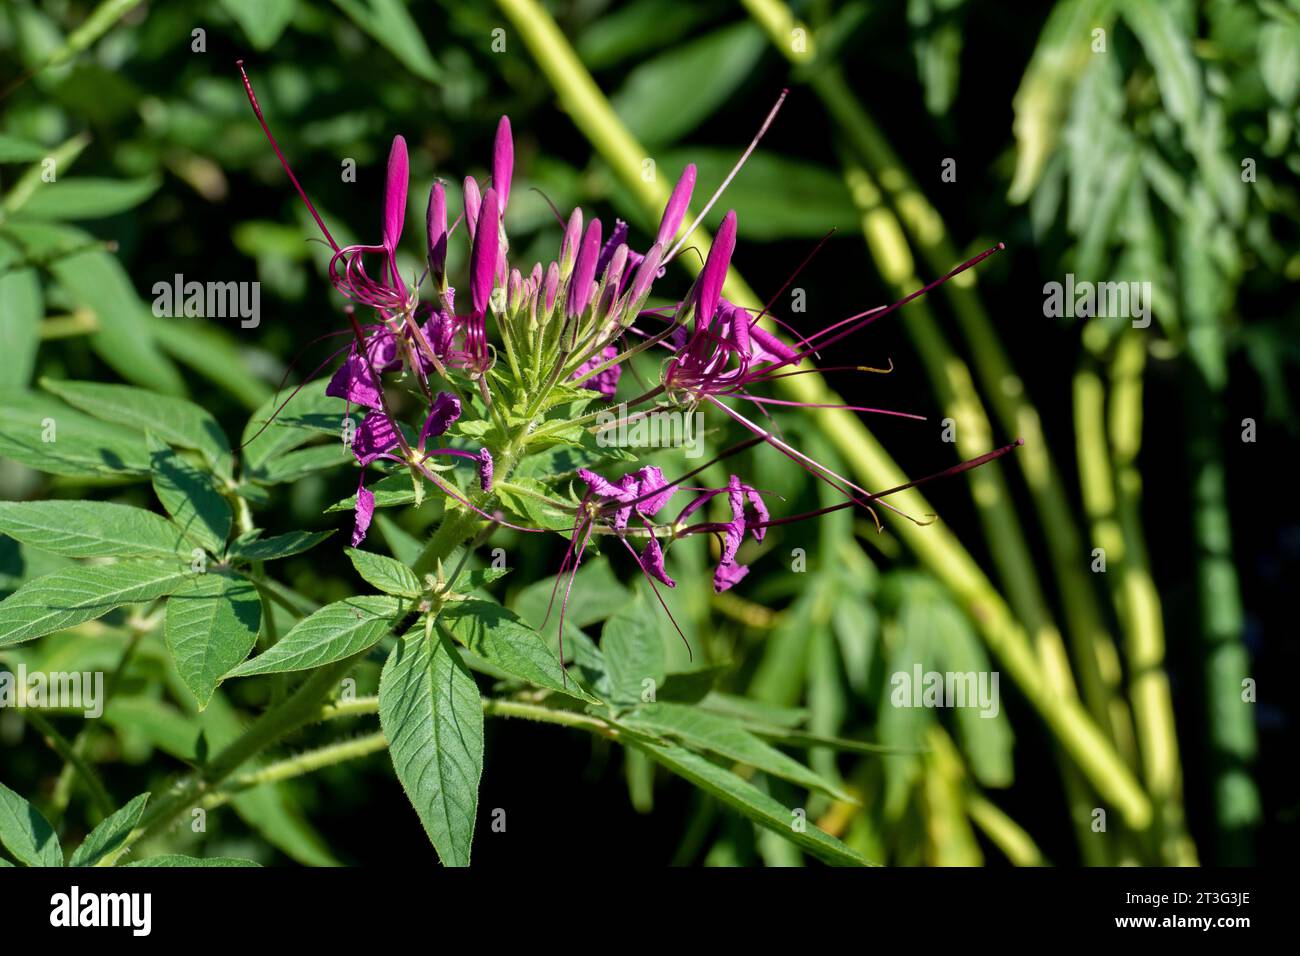 lila Spinnenblume Blüte, Cleome spinosa, mit Cannabis ähnlichem Duft und Aussehen Stock Photo